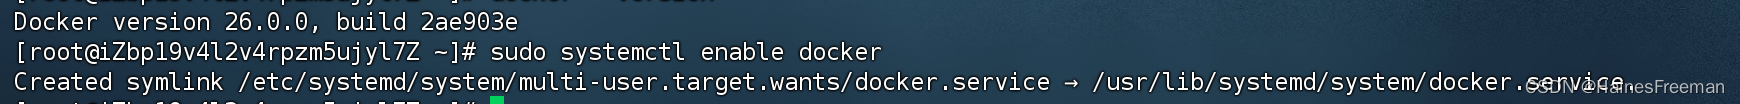 博客部署001-centos安装docker